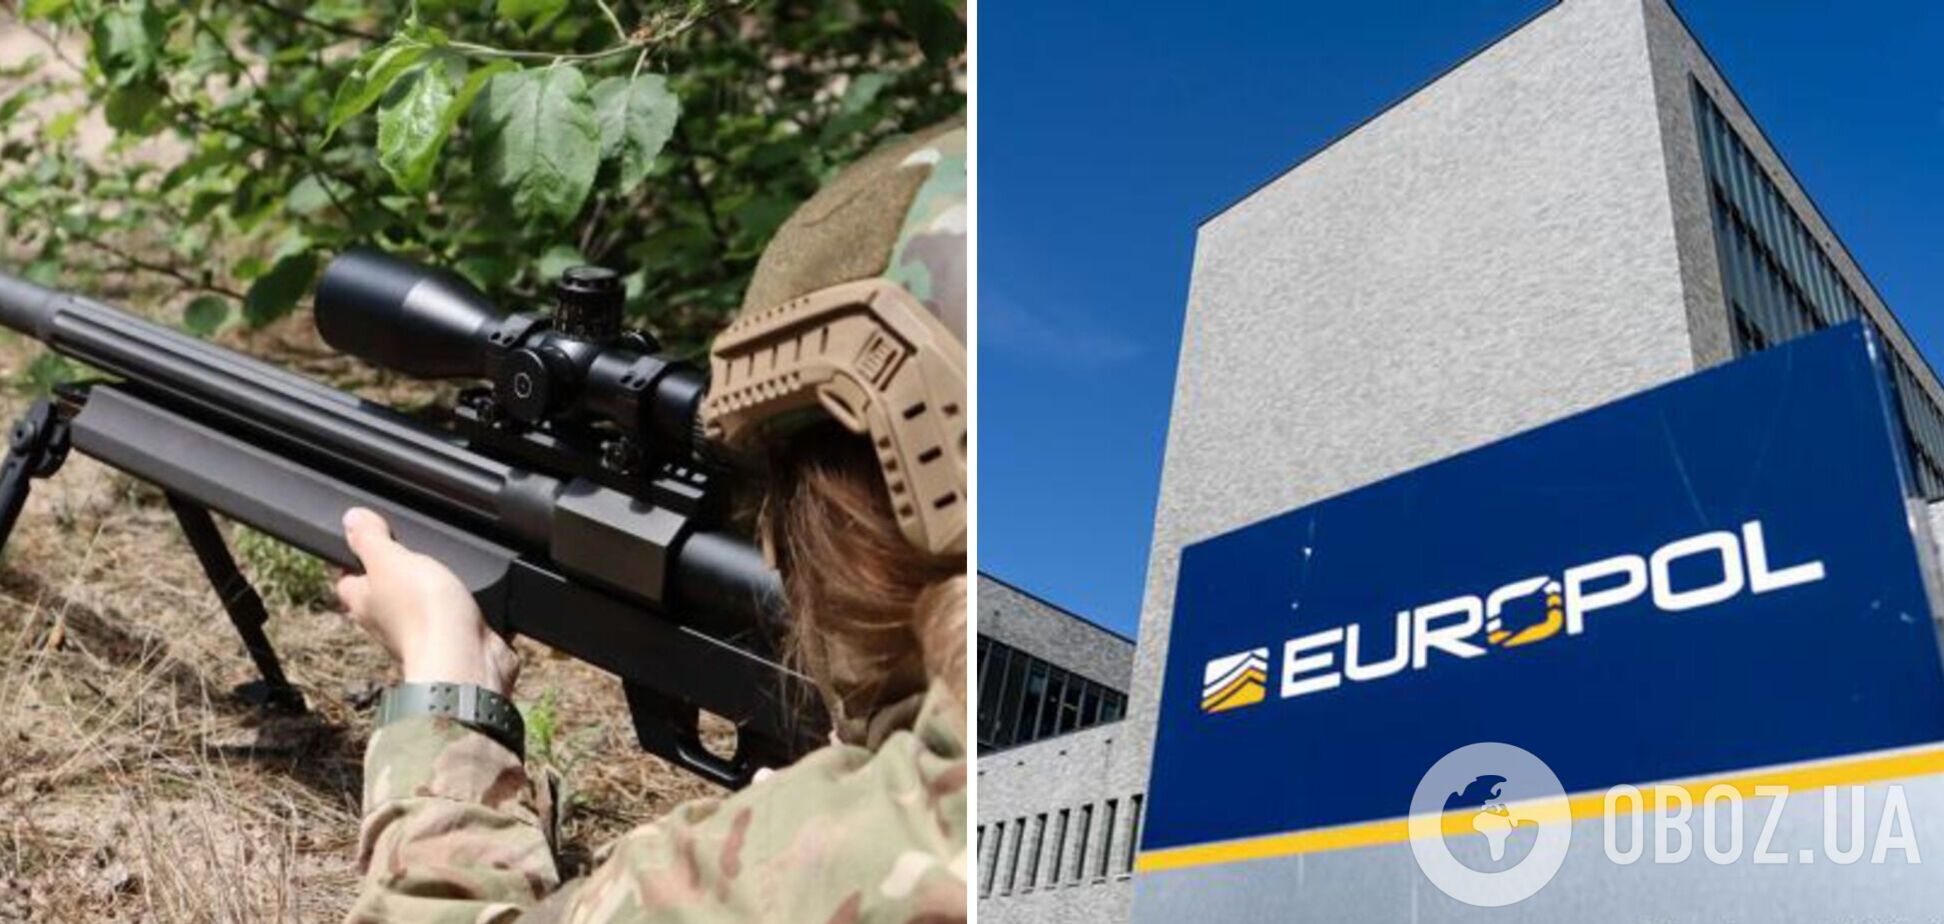 Европол официально опроверг 'контрабанду оружия' из Украины: полностью доверяем украинским властям